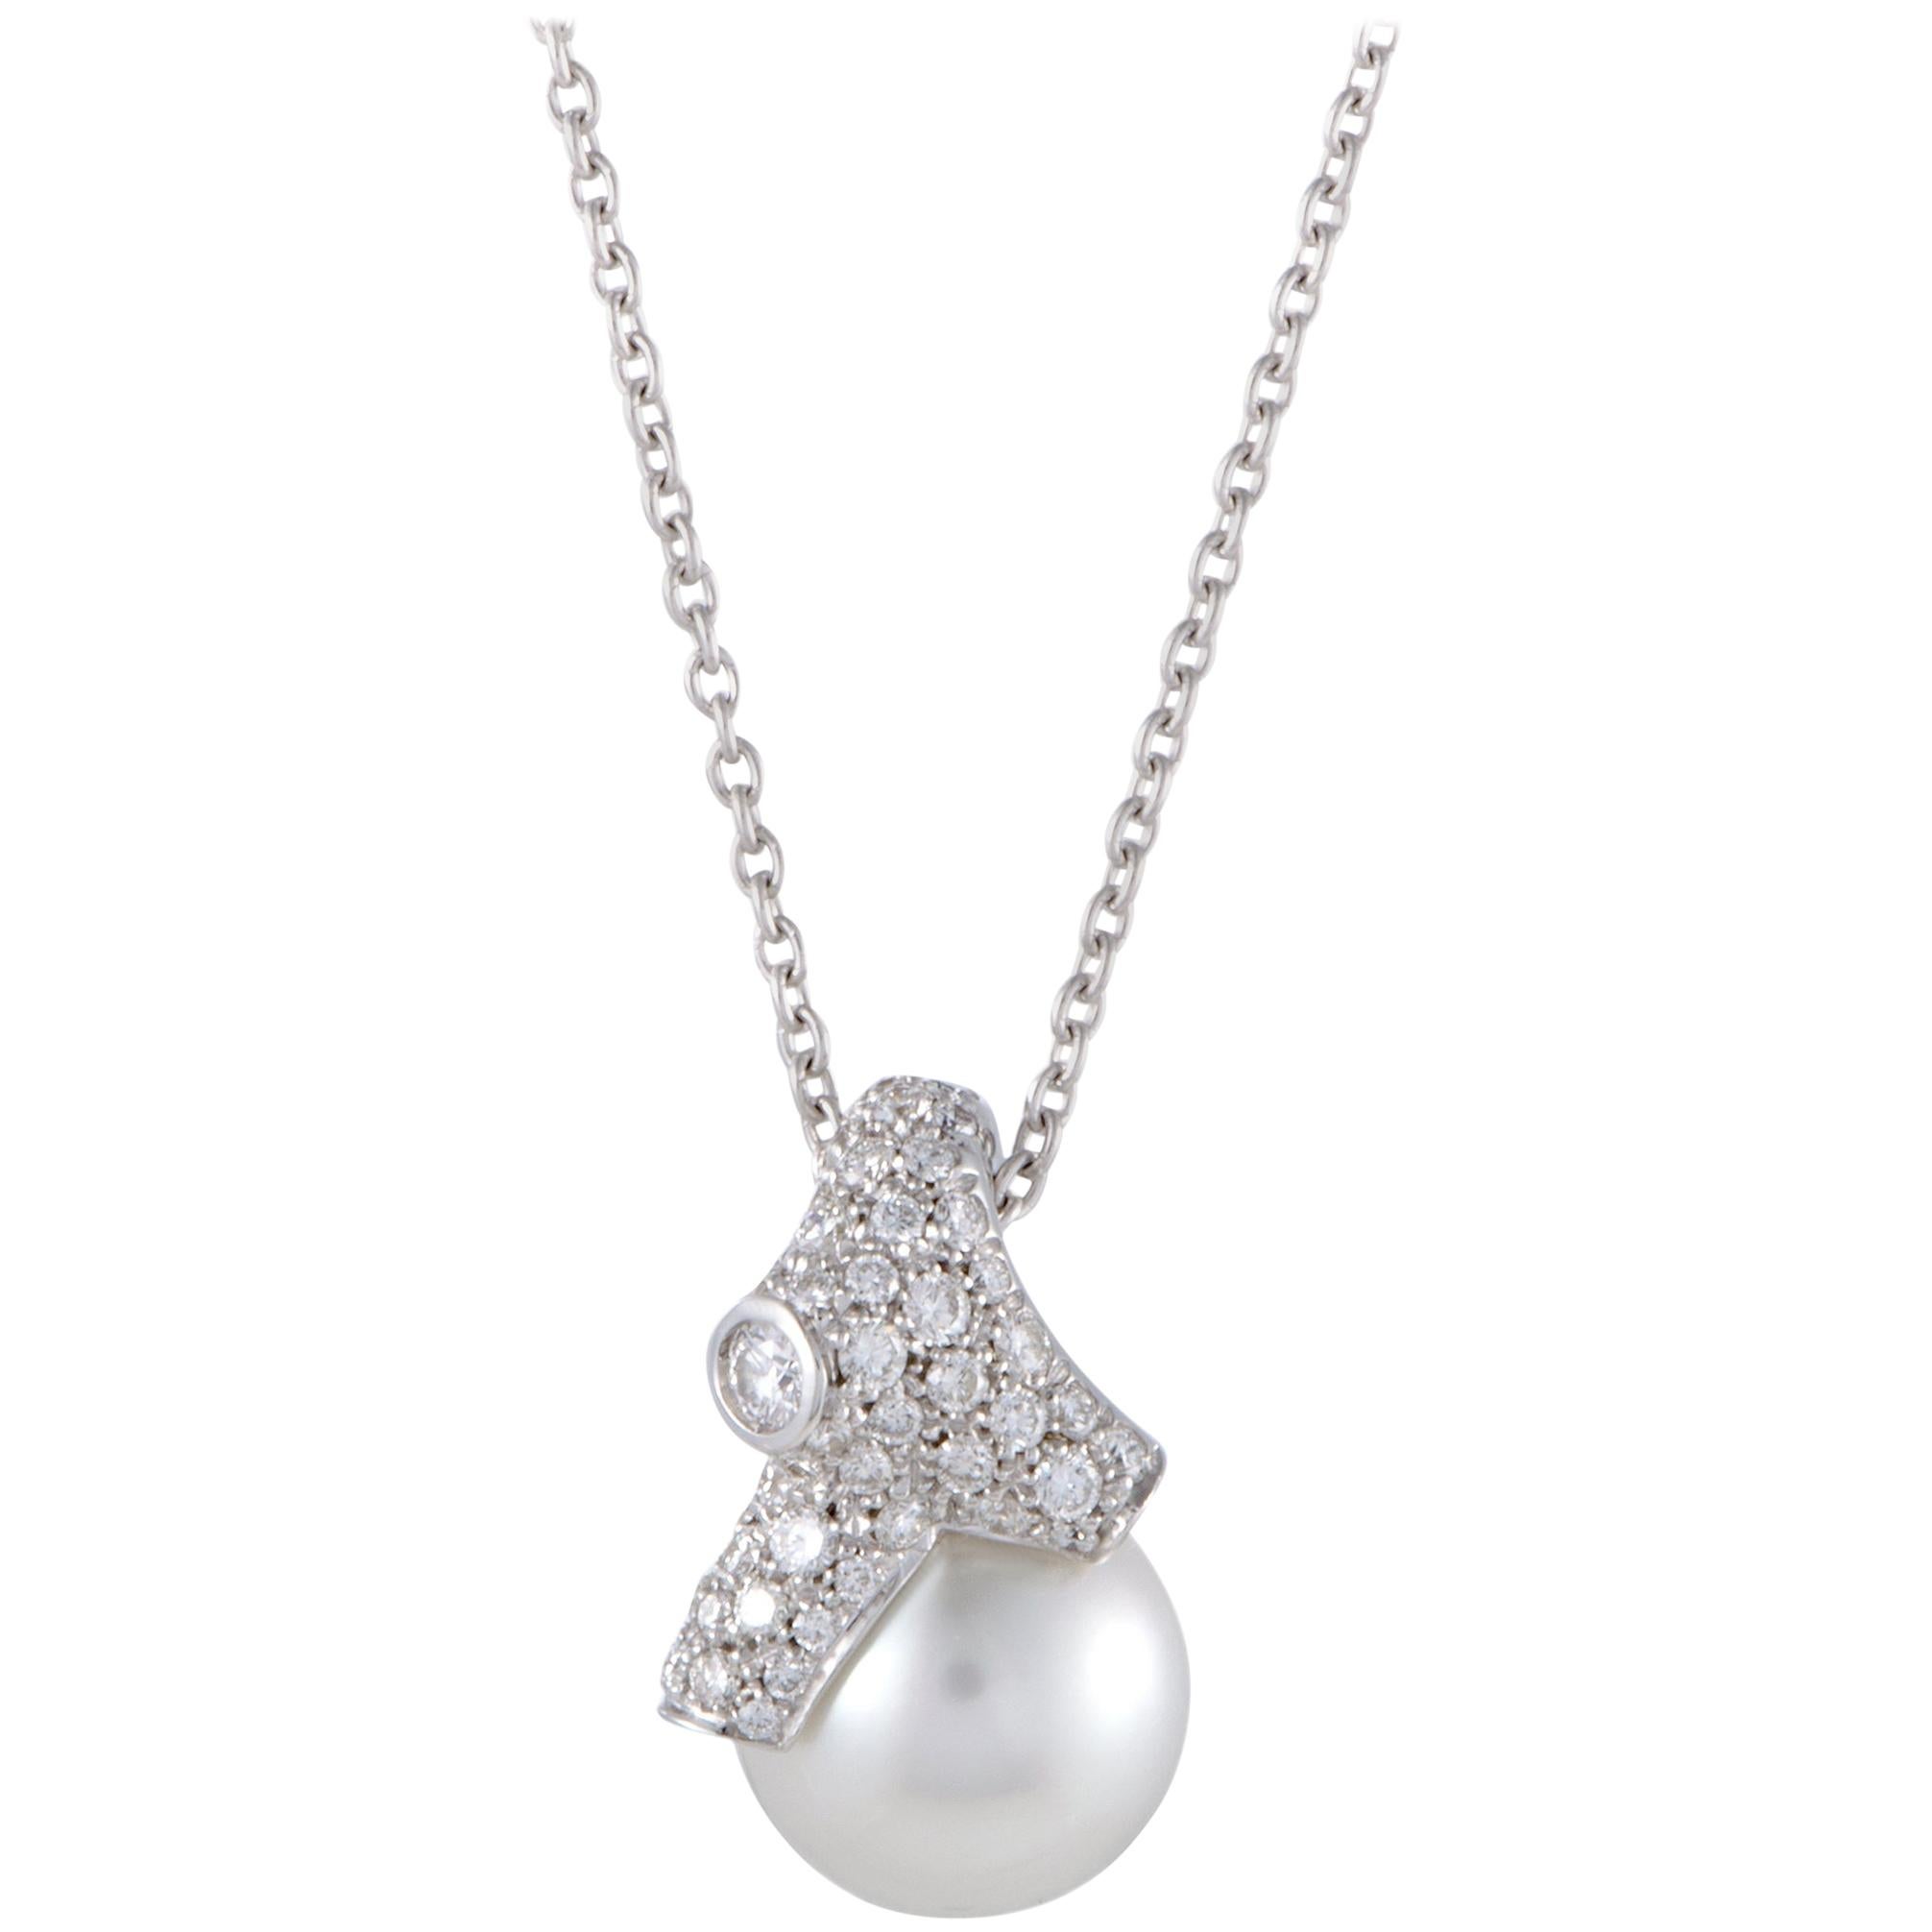 Mikimoto 18 Karat White Gold Diamond and White Pearl Pendant Necklace